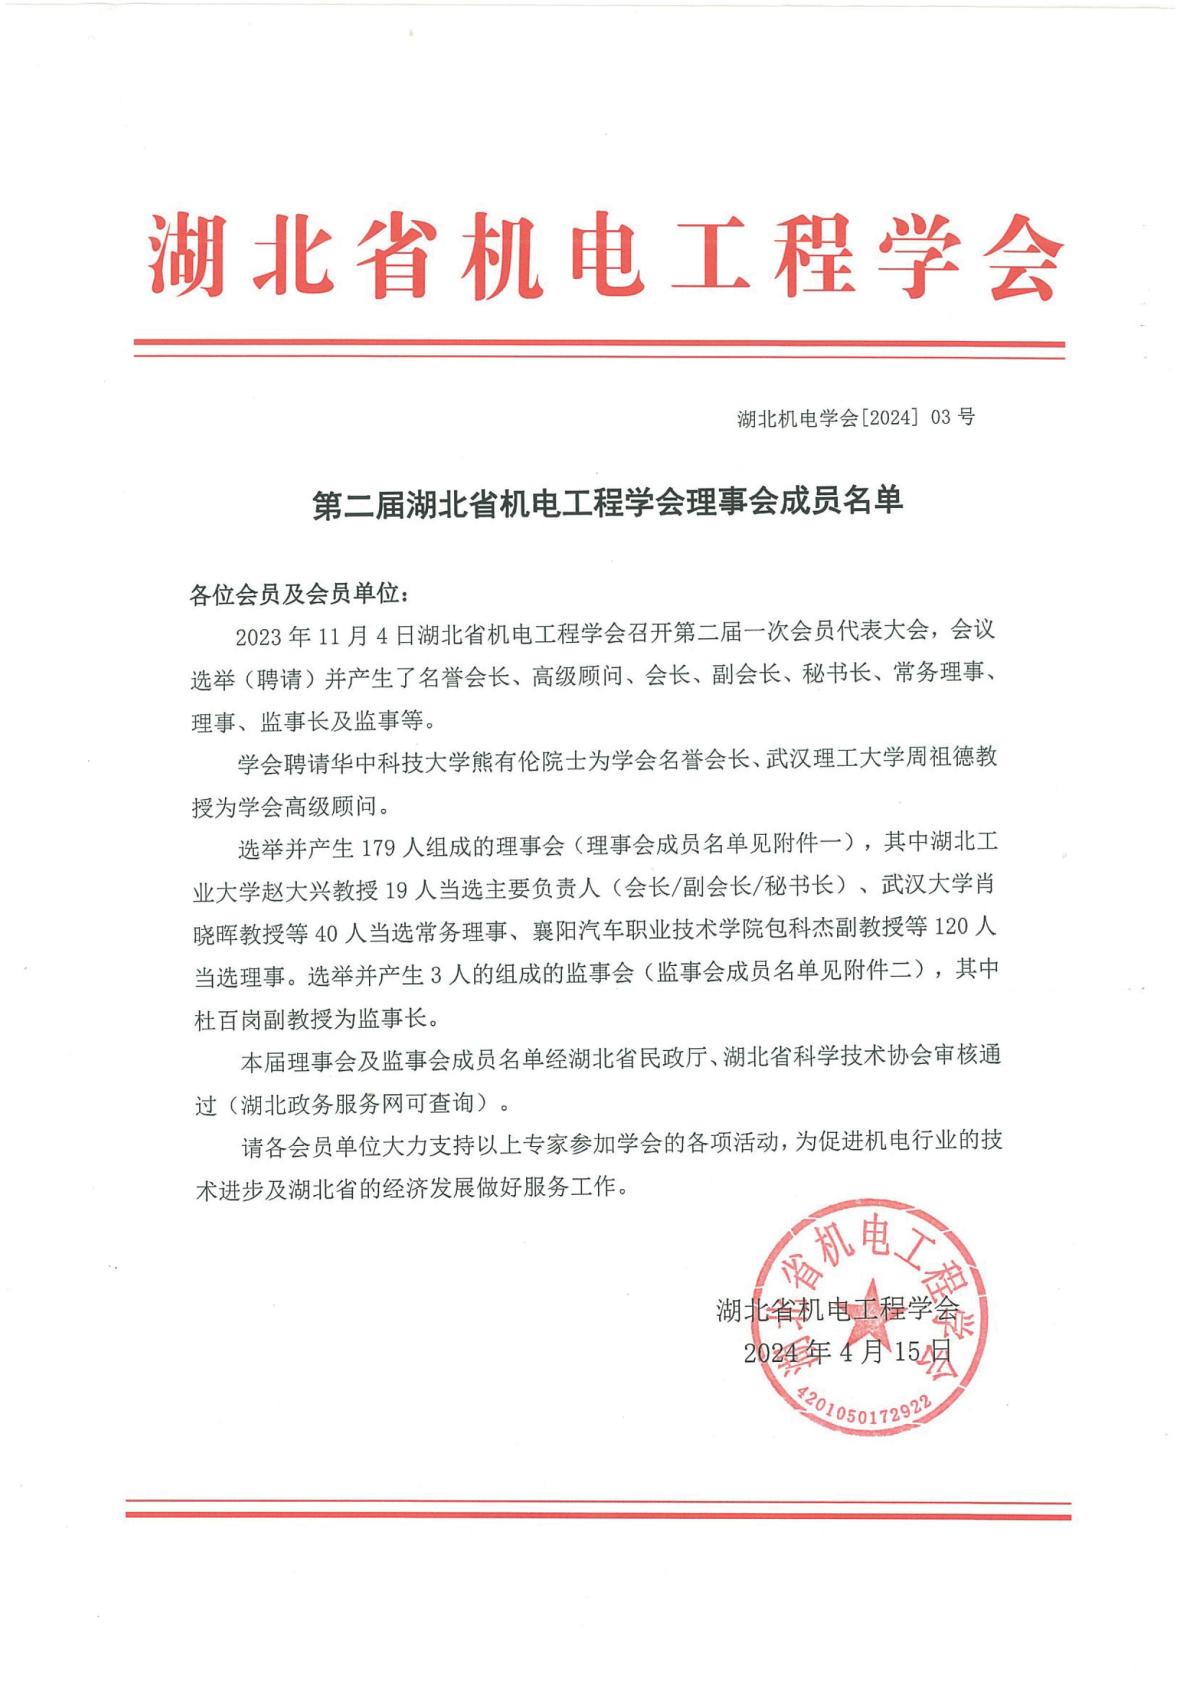 第二届湖北省机电工程学会理事会成员名单